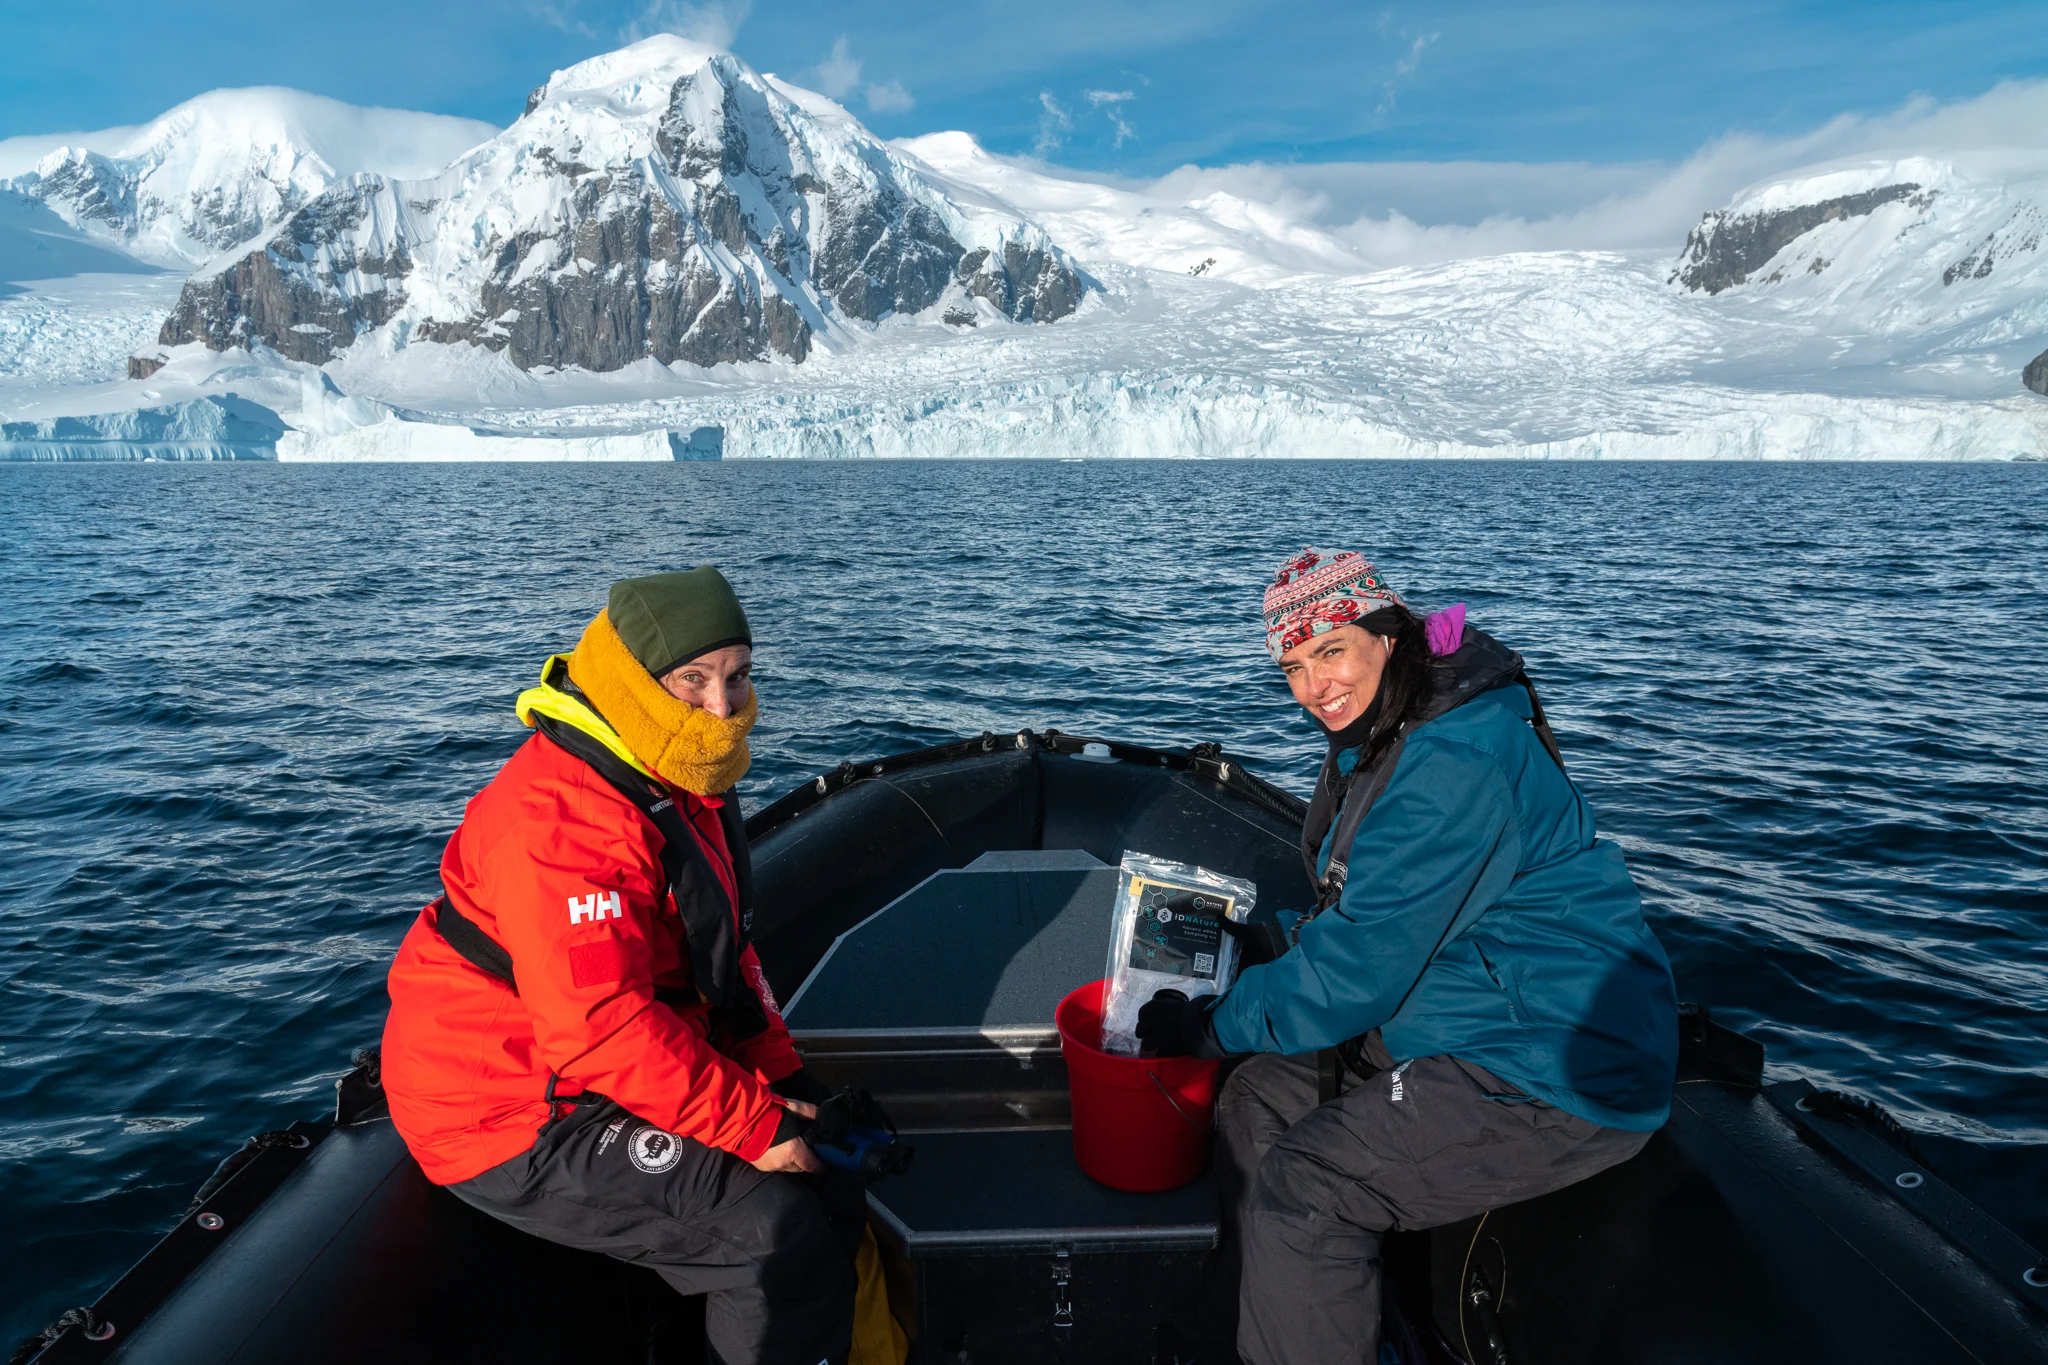 Susana Caballero-Gaitan bei Walforschungstätigkeiten auf Danco Island, Antarktis. Bildnachweis: Yuri Choufour.